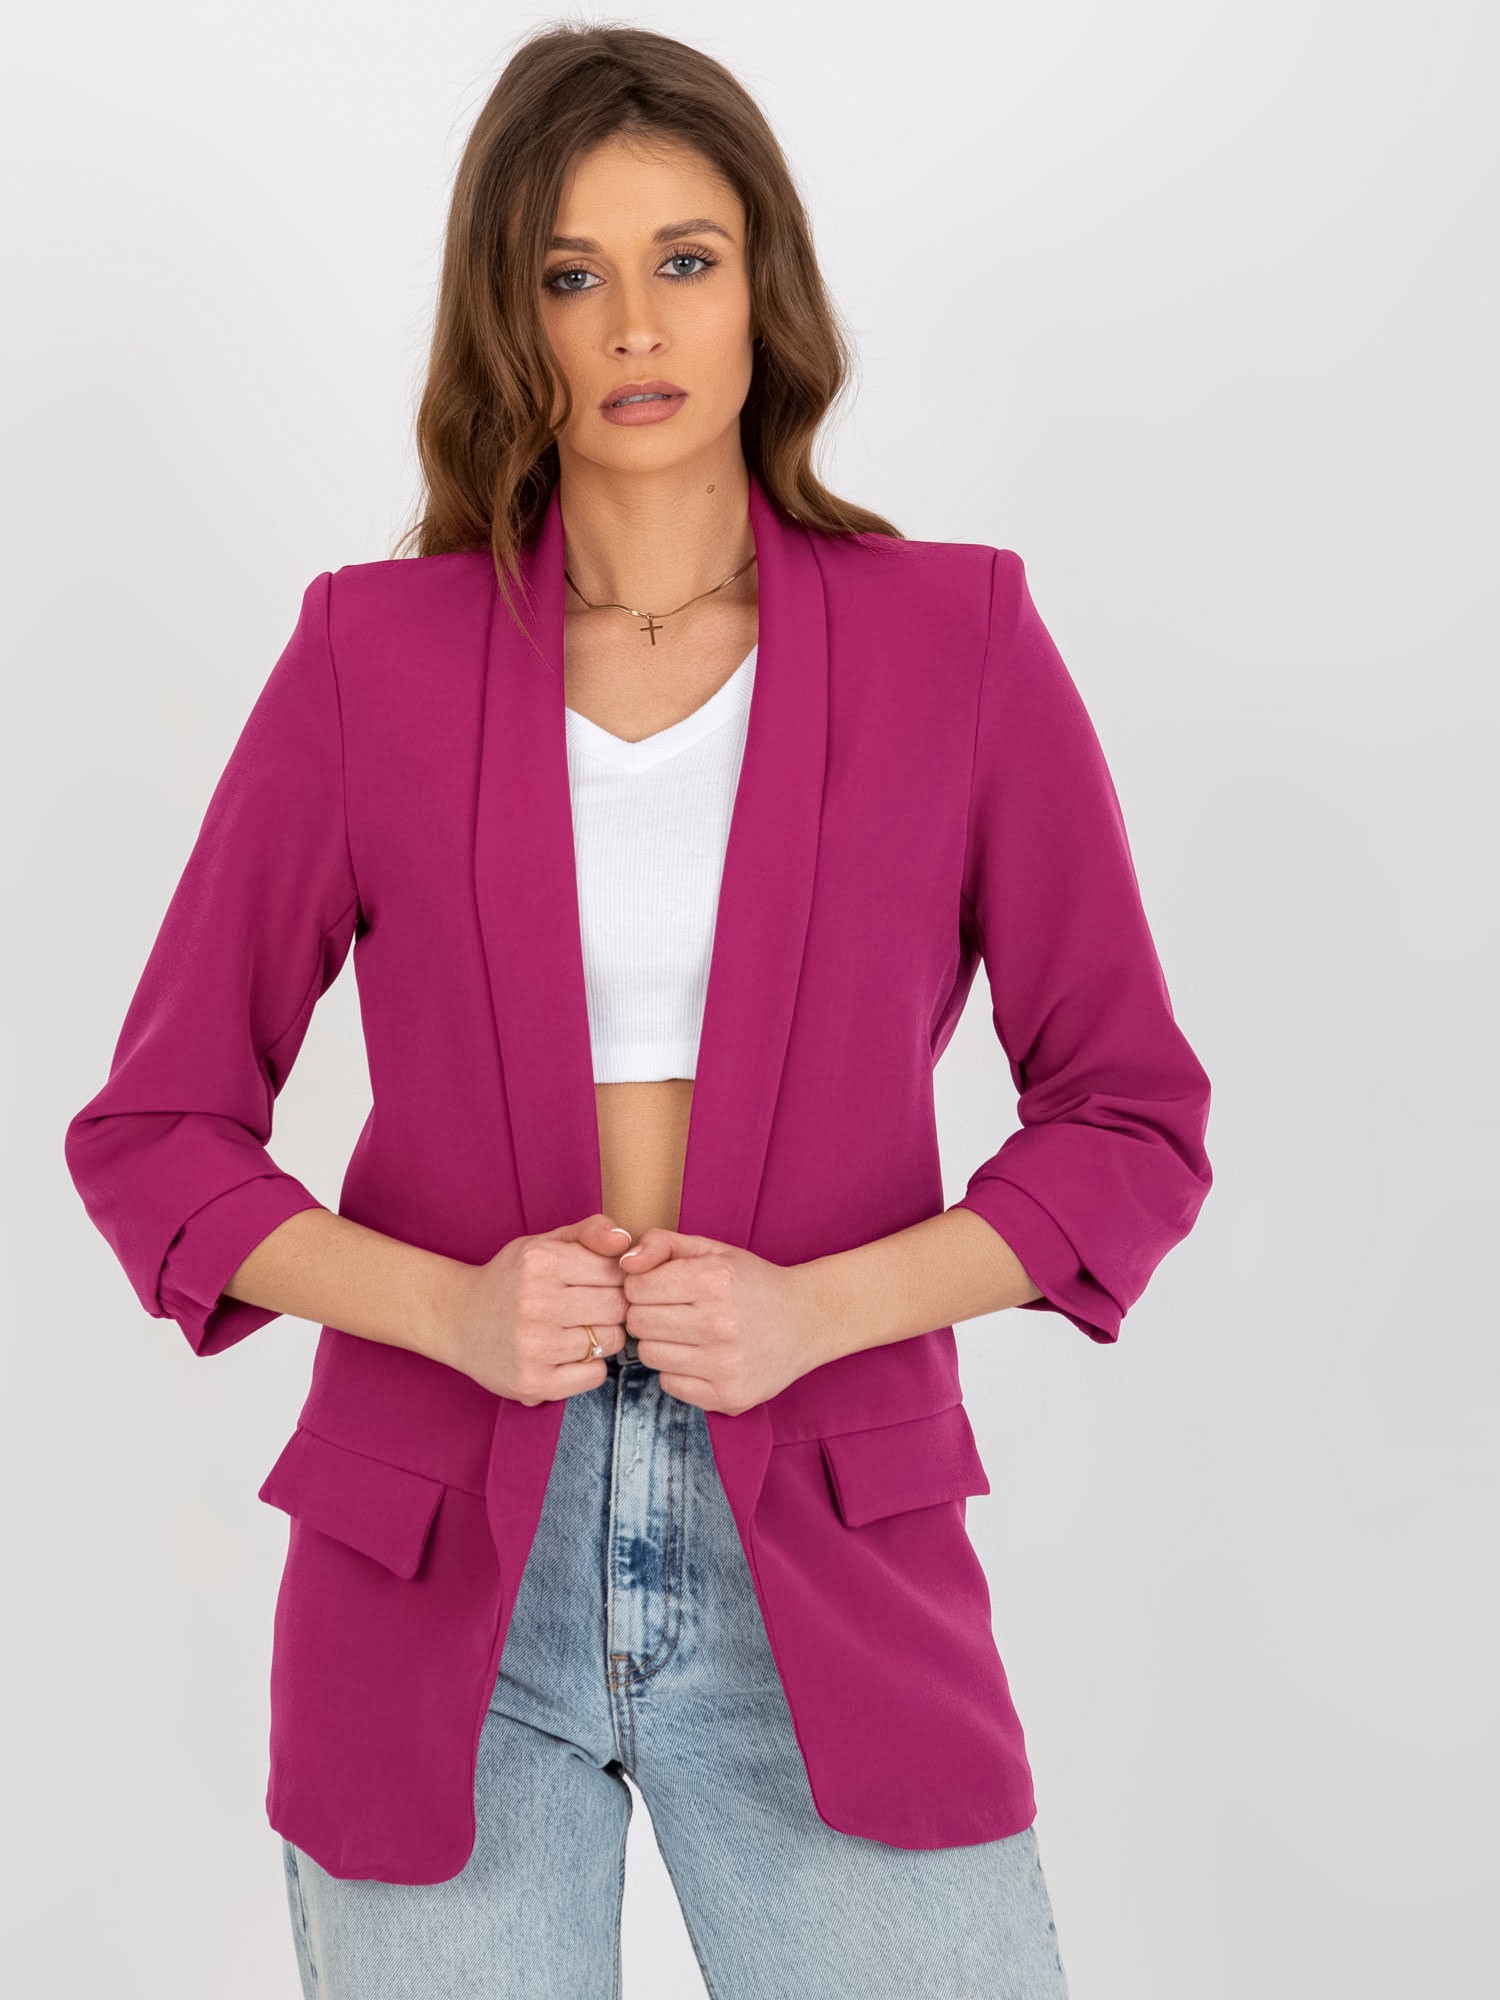 Women's fuchsia jacket Adela without fastening